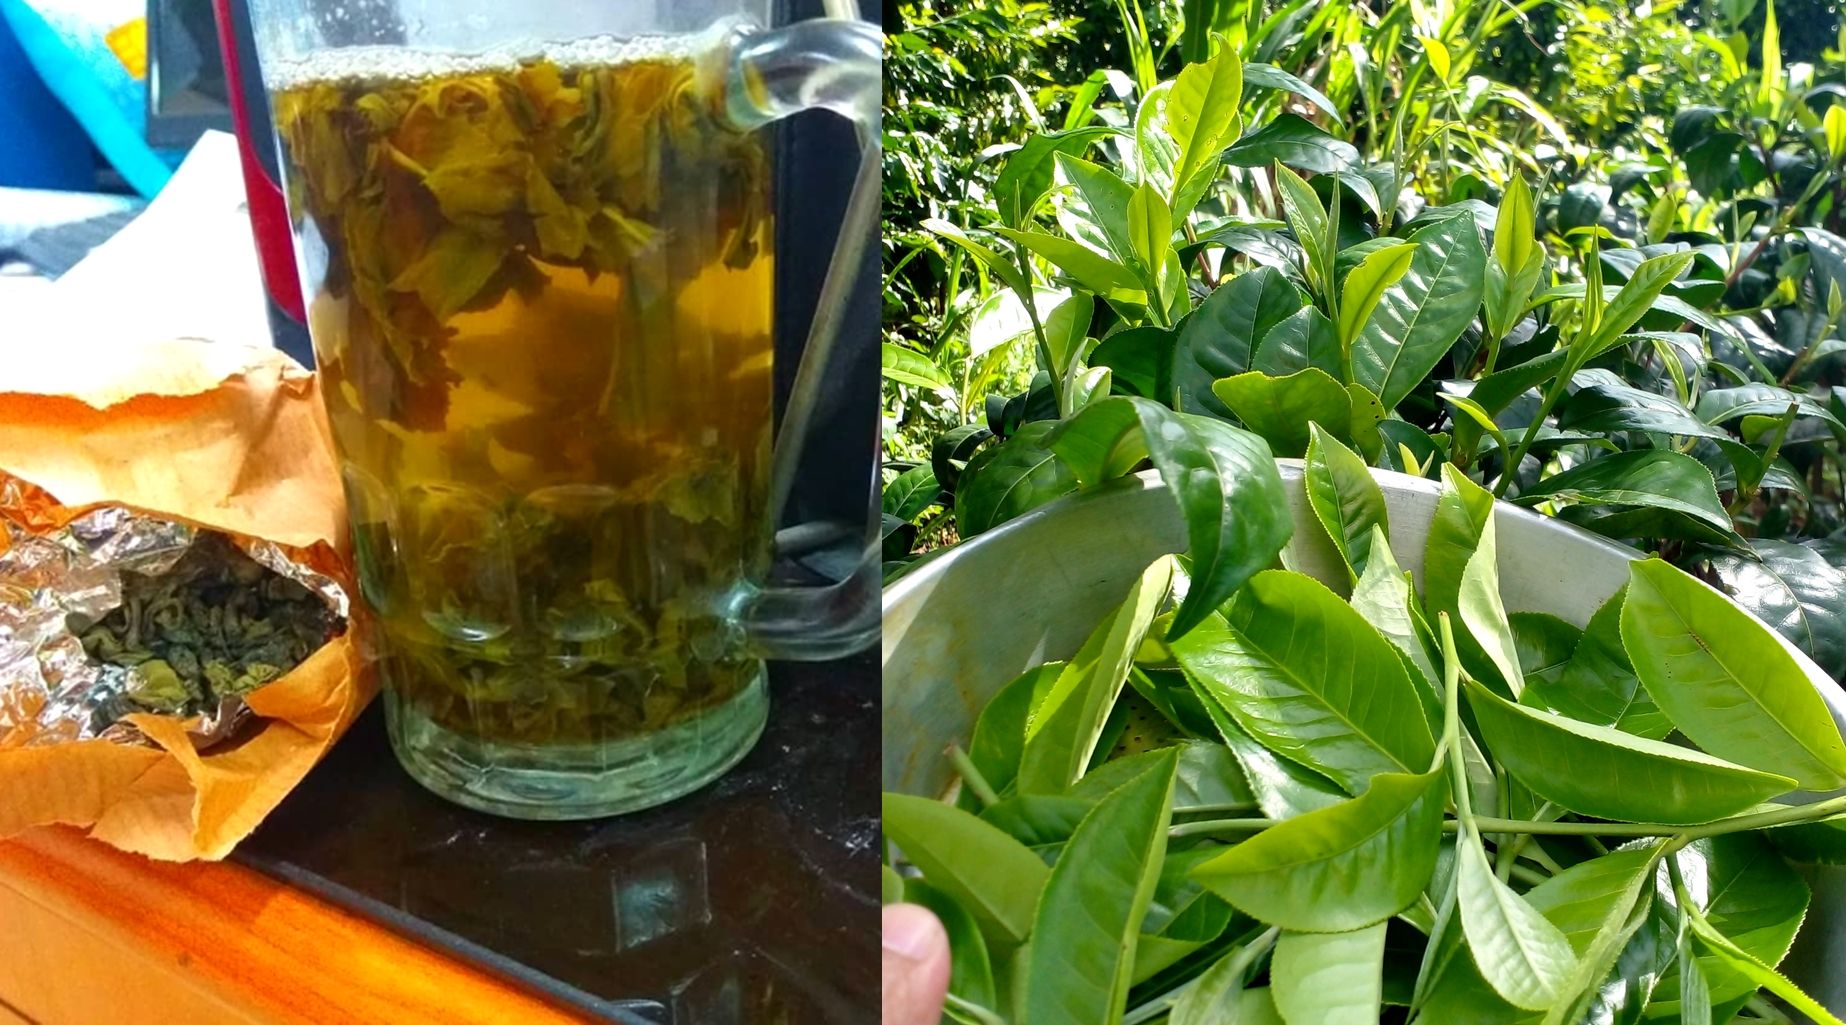 Minuman teh hijau atau green tea konvensional tetapi berkualitas tinggi.